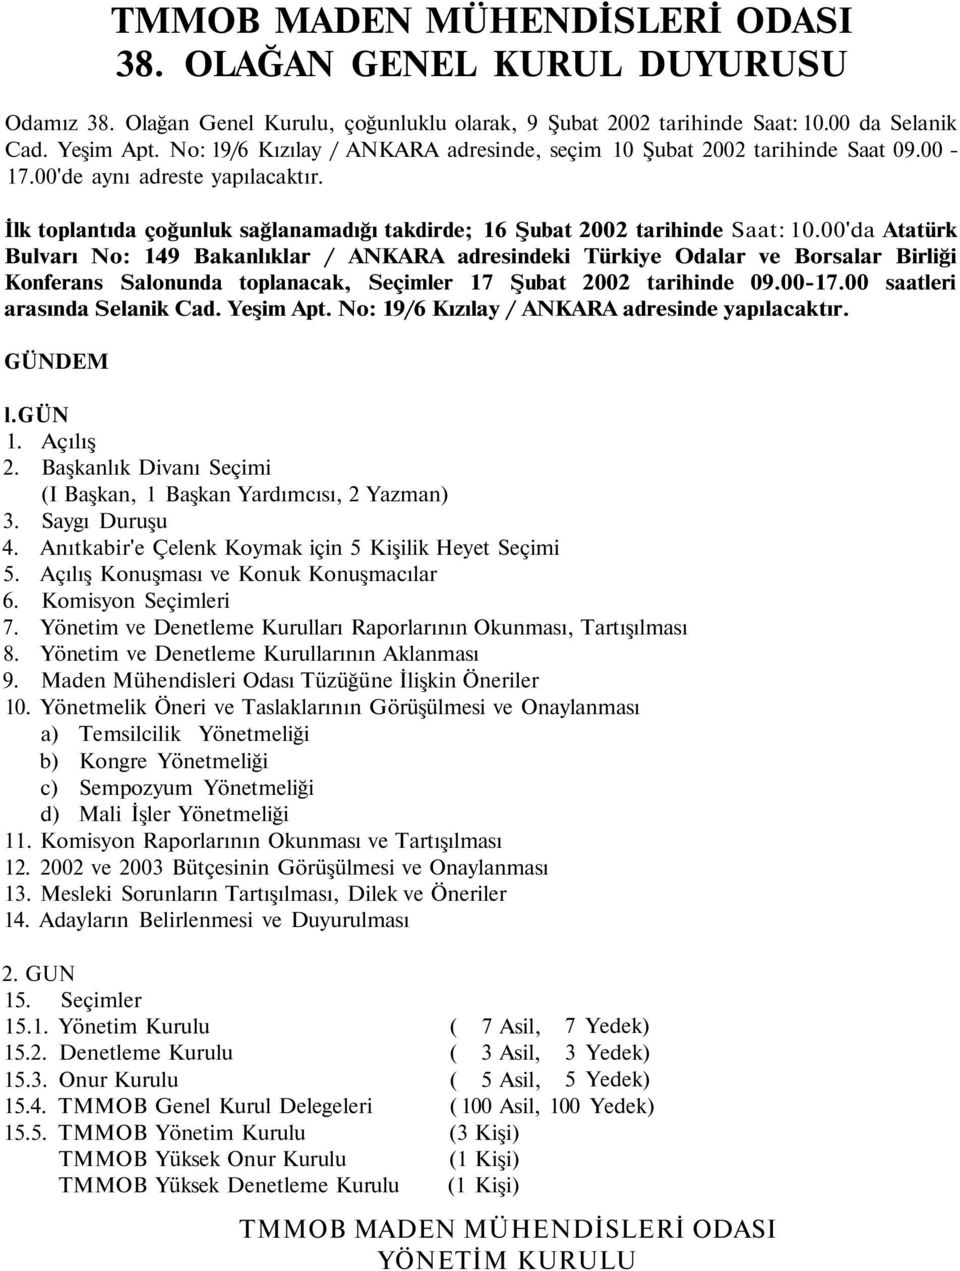 00'da Atatürk Bulvarı No: 149 Bakanlıklar / ANKARA adresindeki Türkiye Odalar ve Borsalar Birliği Konferans Salonunda toplanacak, Seçimler 17 Şubat 2002 tarihinde 09.00-17.